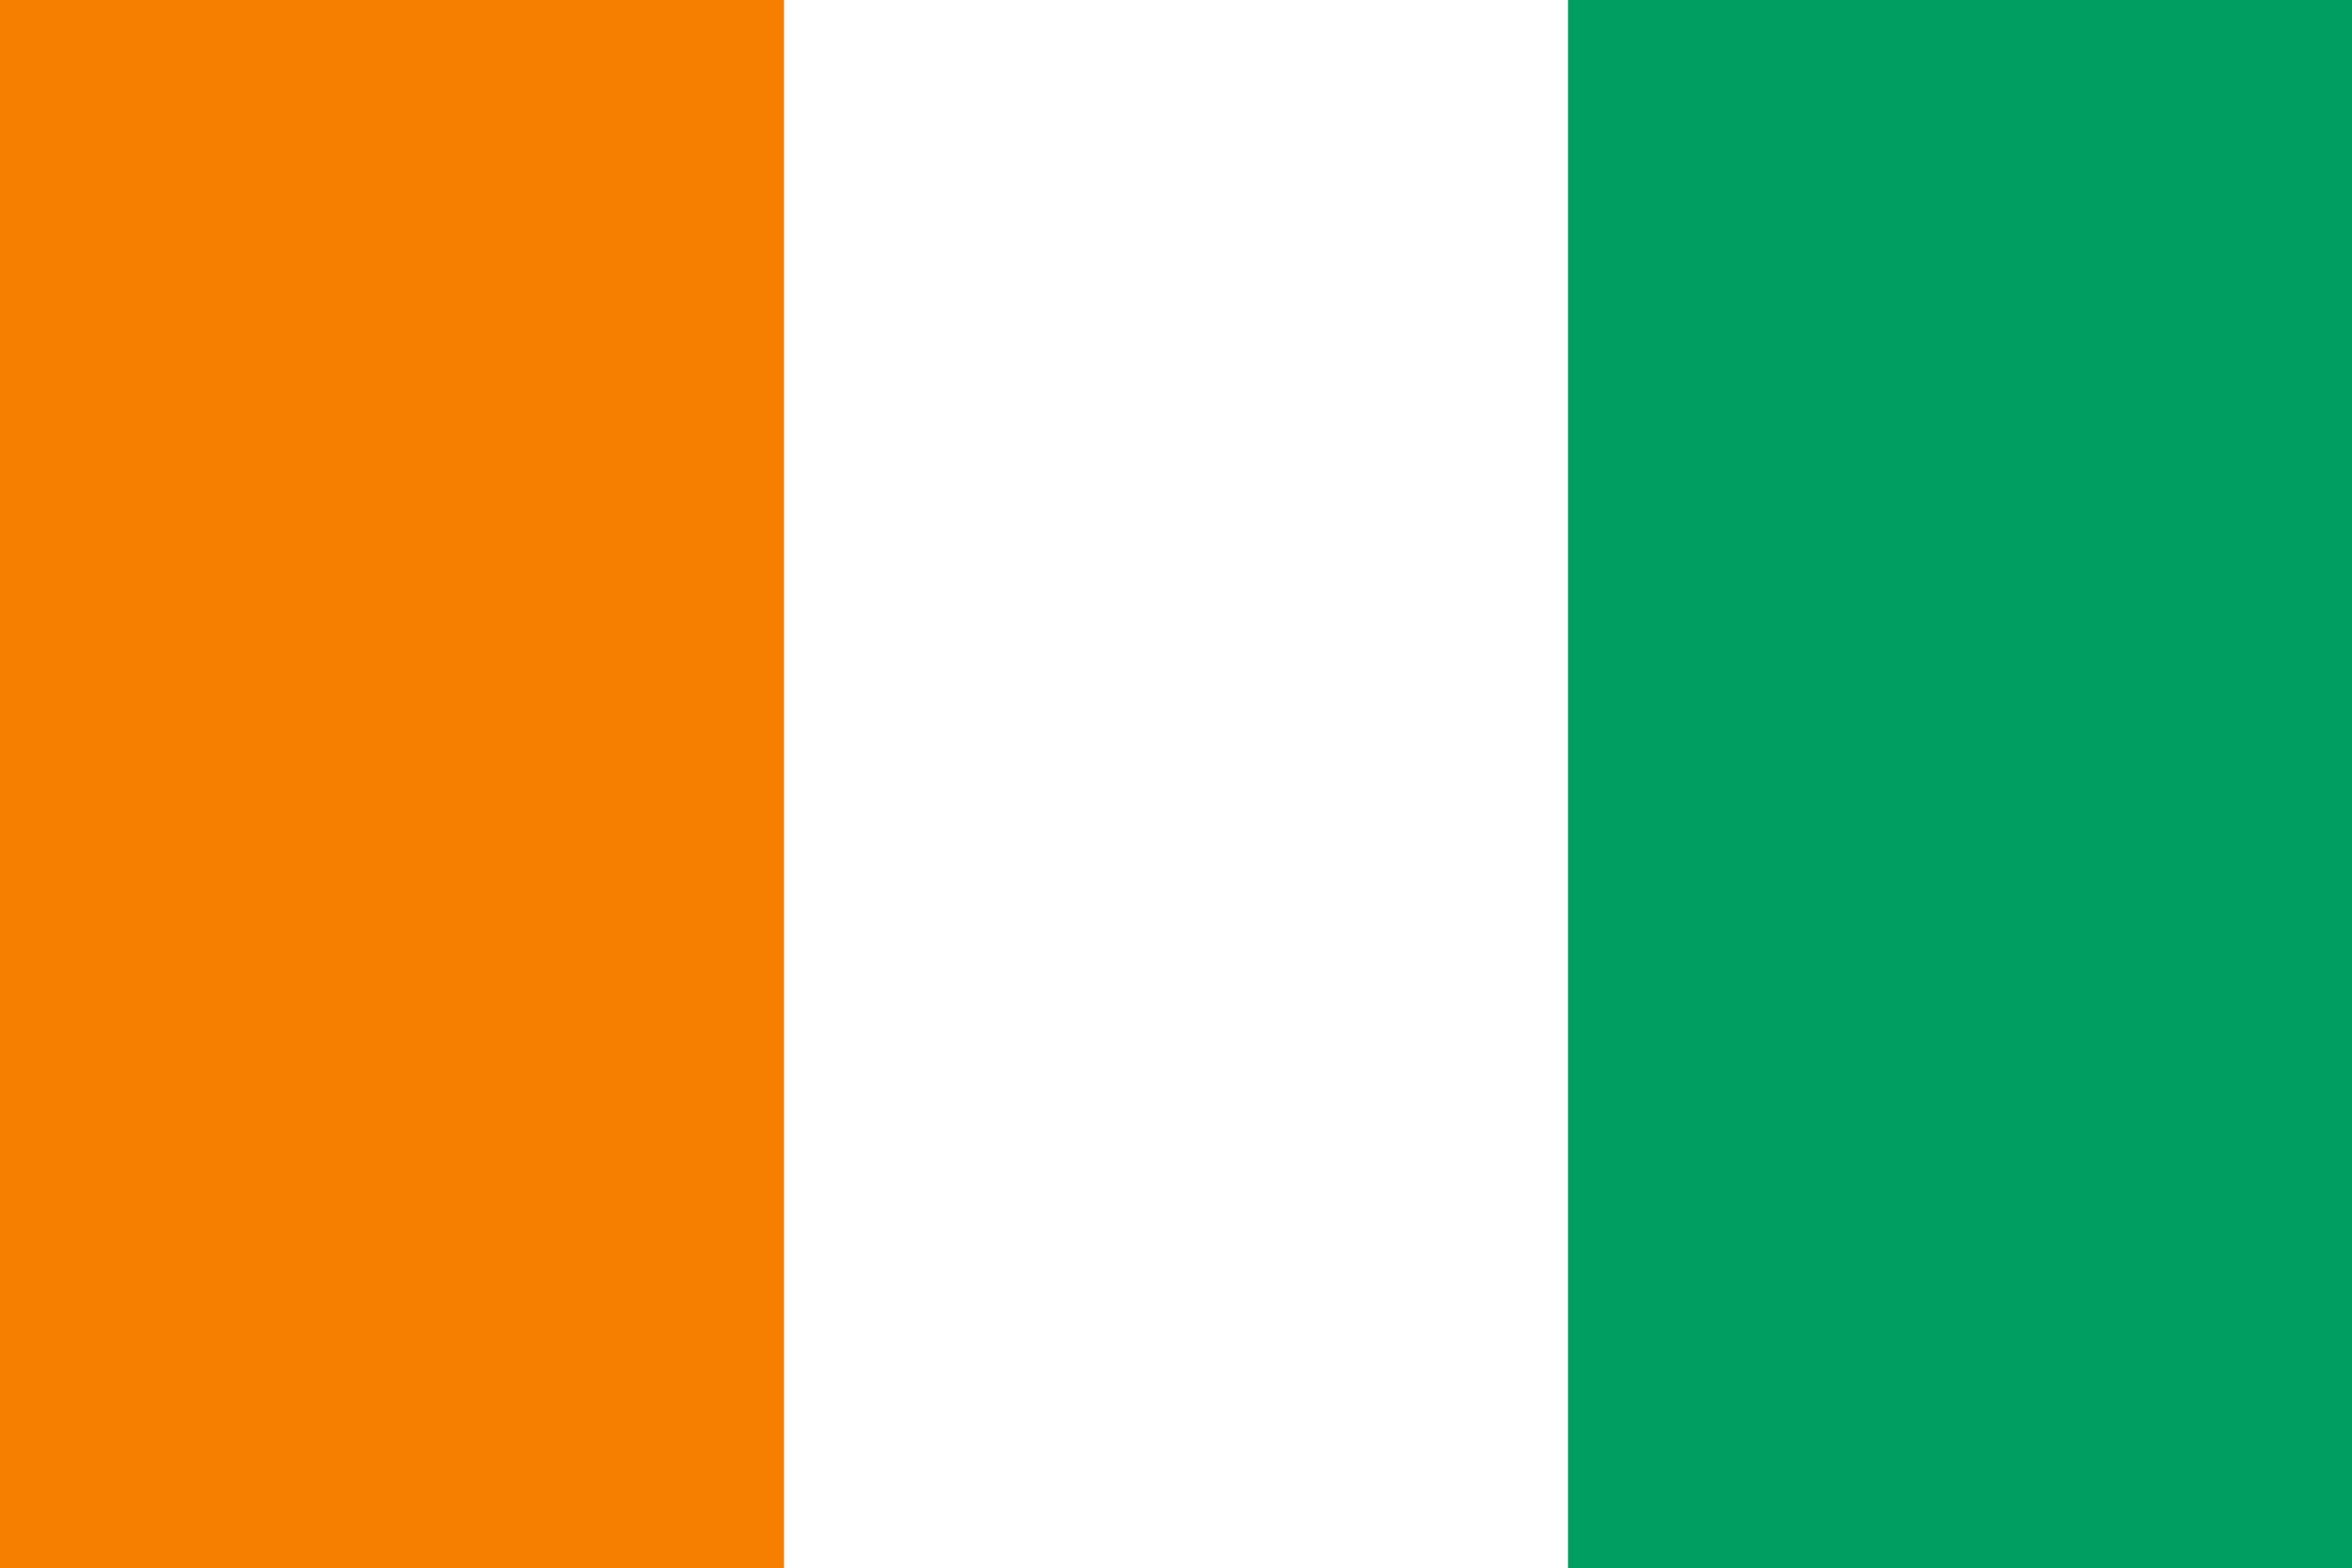 Cote d'Ivoire's flag